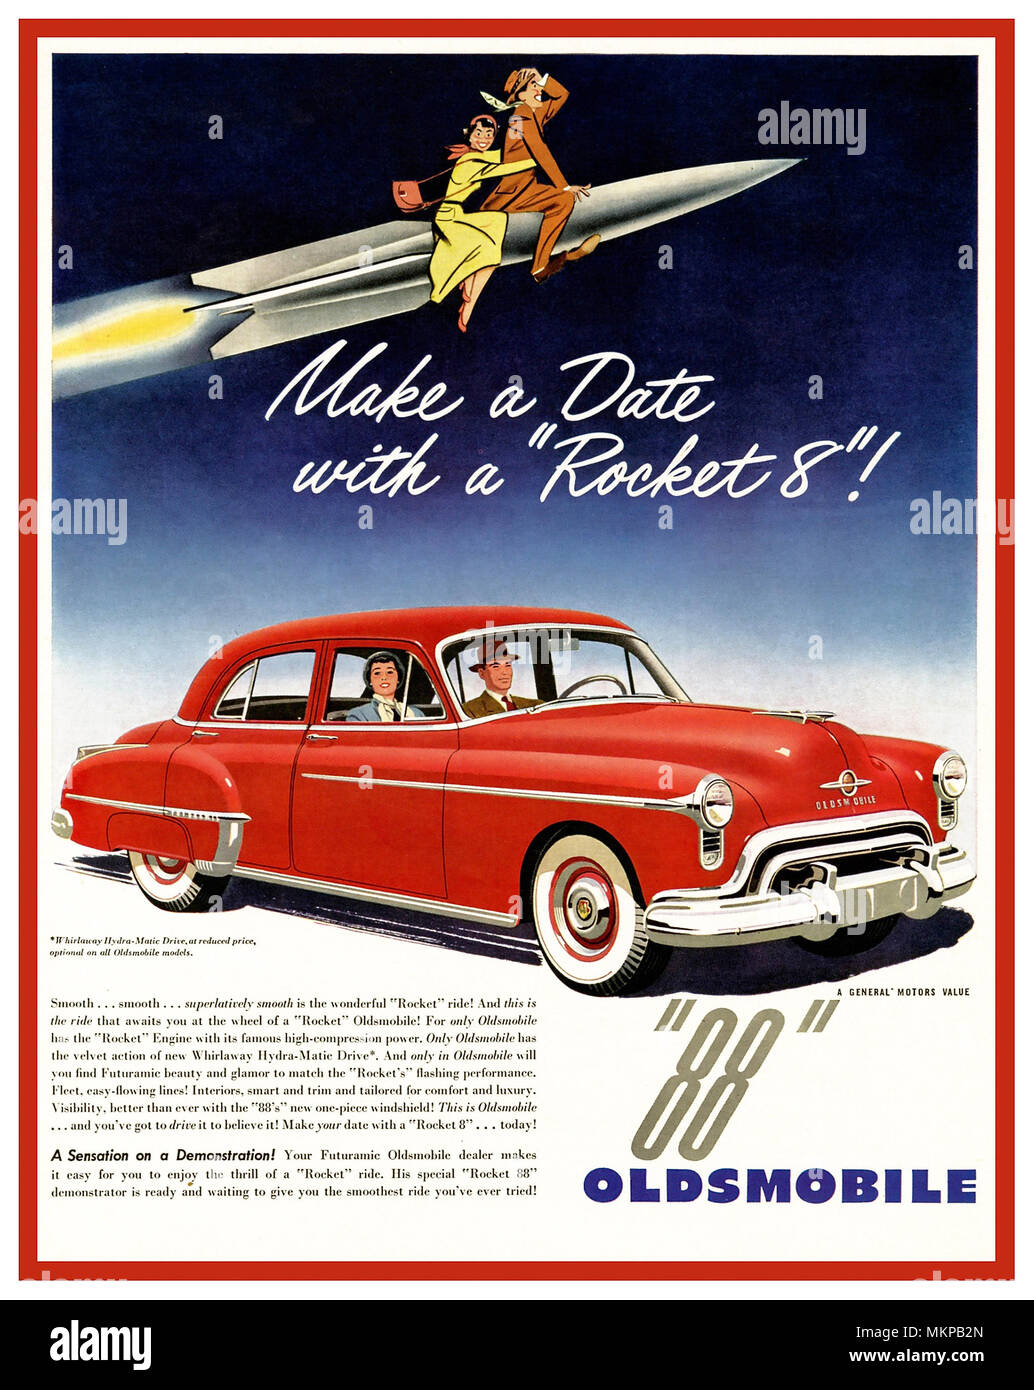 OLDSMOBILE Vintage 1949-1950's American Car advertisement for the Oldsmobile 88 (conosciuto come Rocket Eighty Eight) un'auto di dimensioni normali che è stata venduta e prodotta da Oldsmobile in varie forme dal 1949 al 1999 'fate una data con un Rocket 8' ! Foto Stock